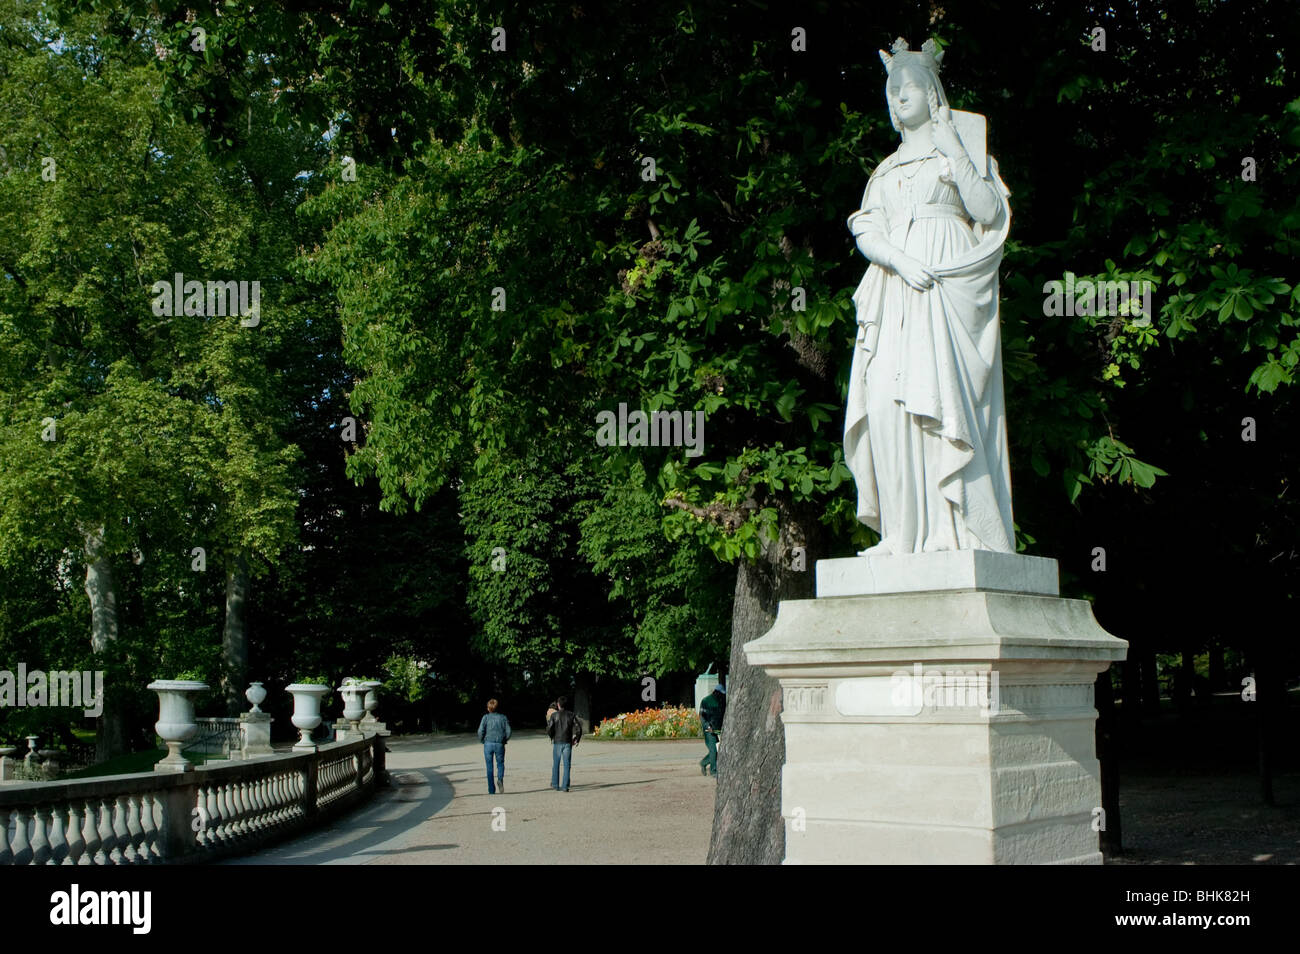 Paris, FRANCE - statues de reines françaises dans 'jardins du Luxembourg', 'jardin du Luxembourg', jardin urbain paysager des citadins Banque D'Images